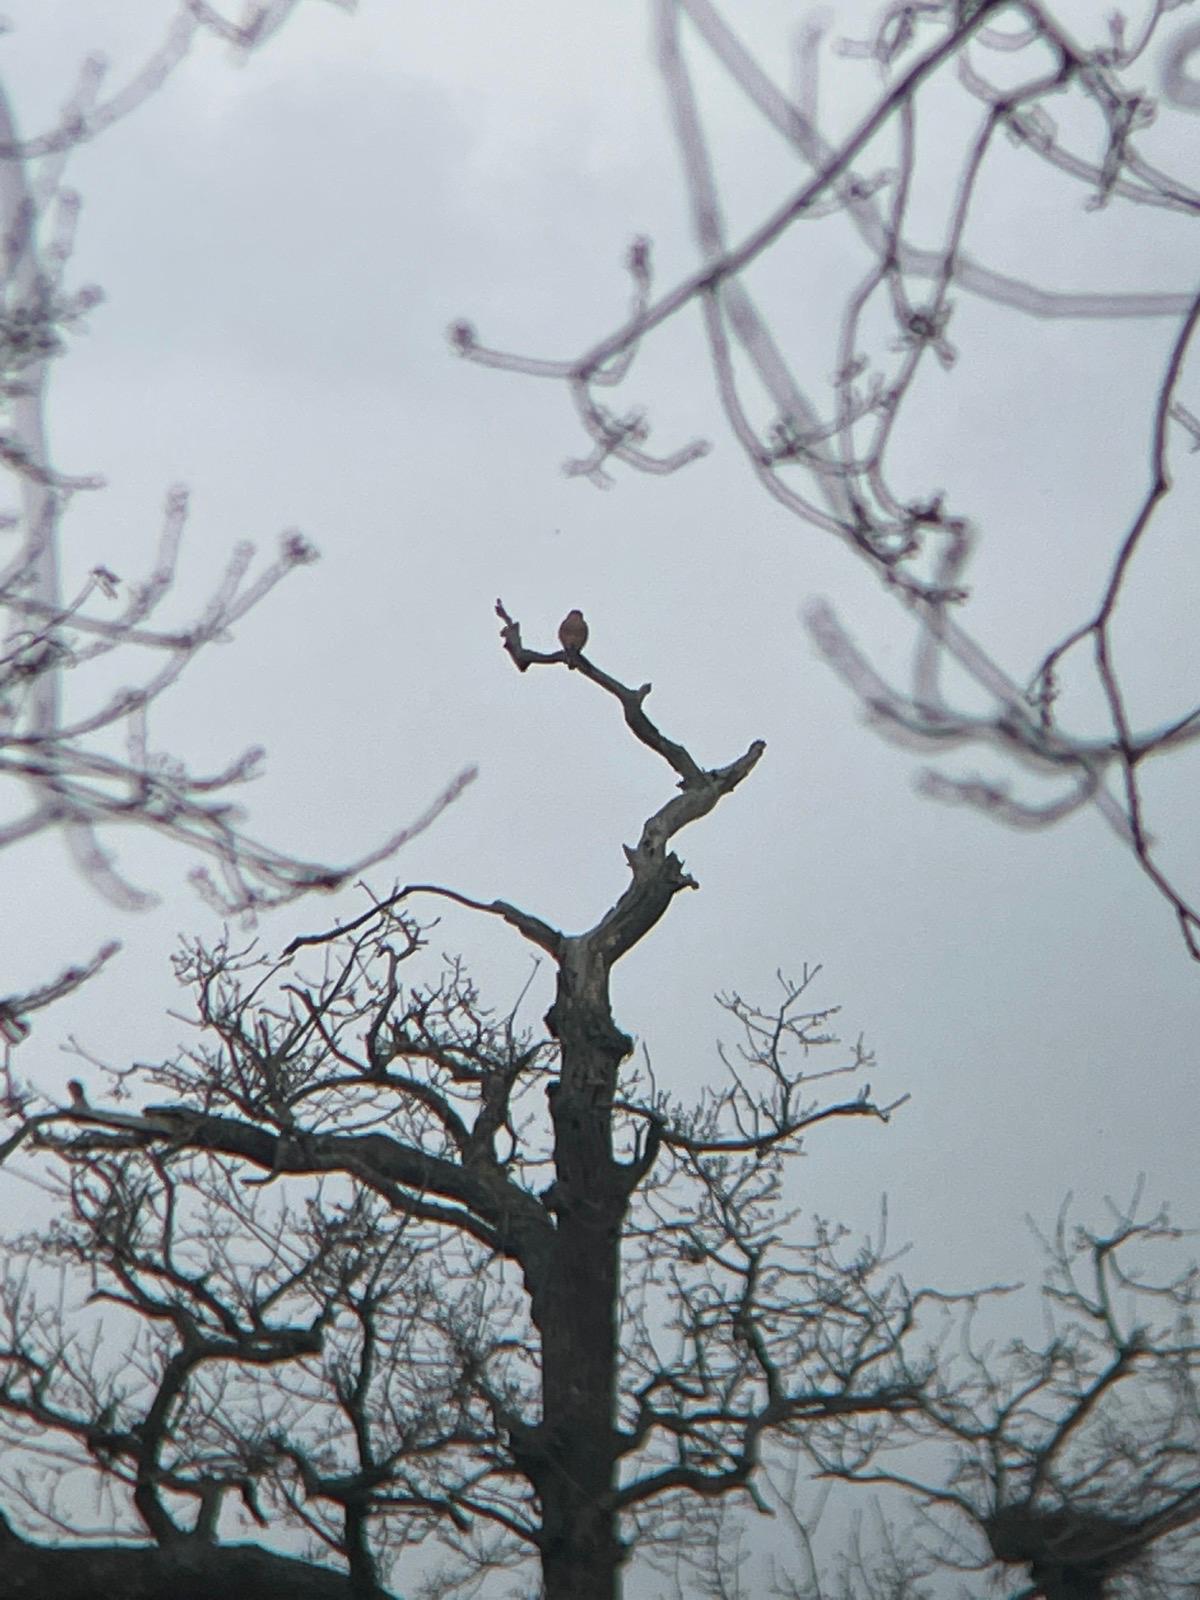 hawk in a blurred tree